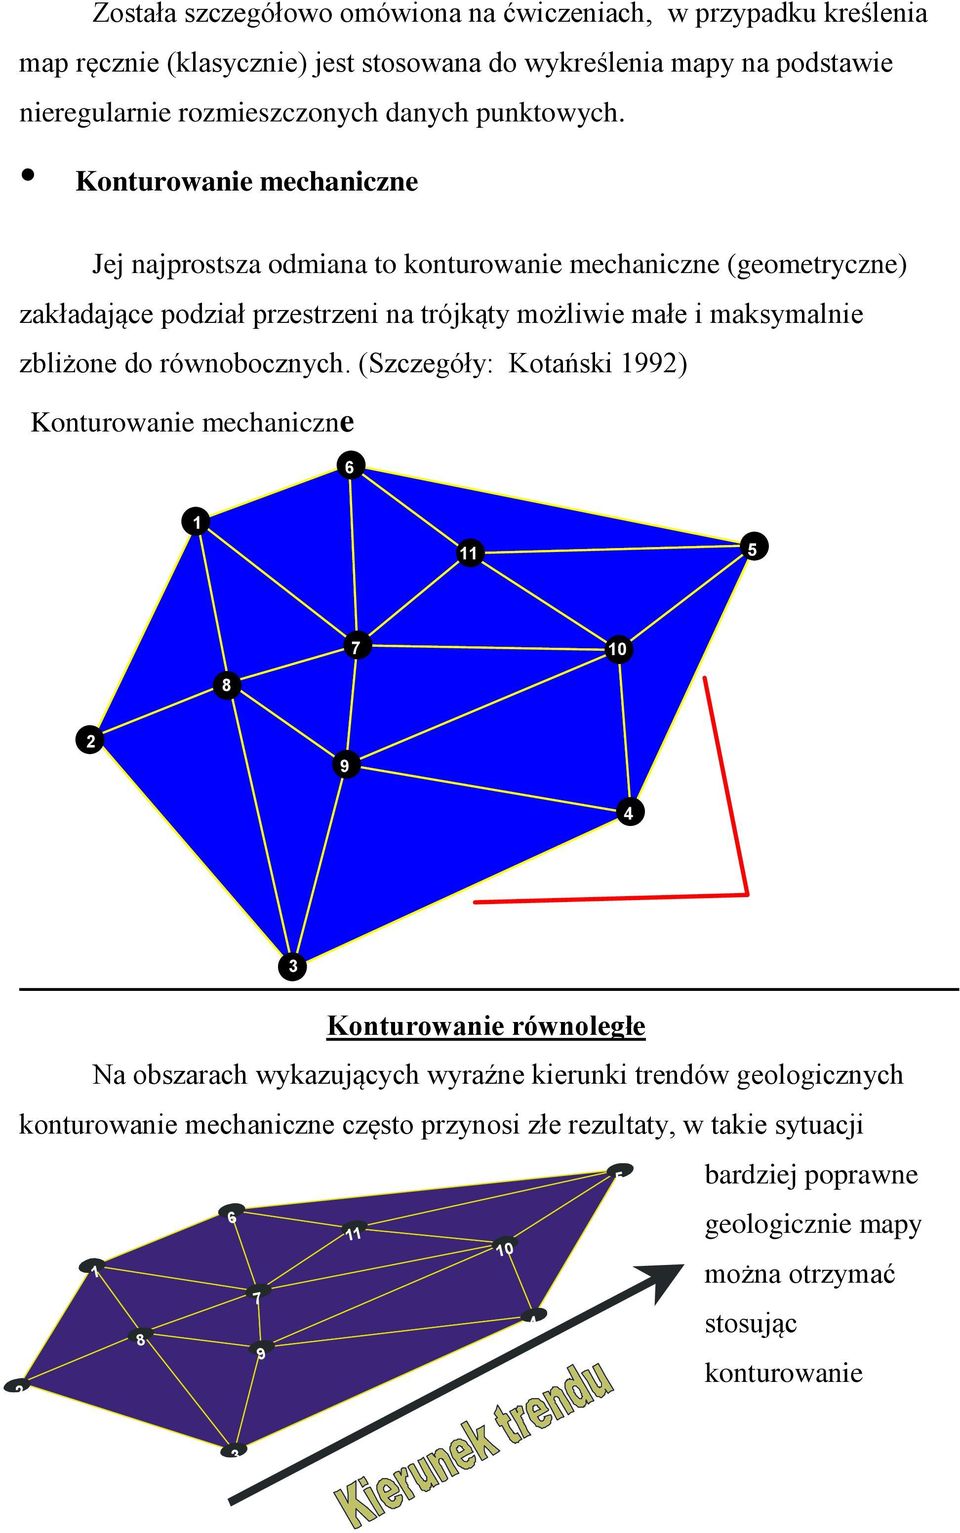 Konturowanie mechaniczne Jej najprostsza odmiana to konturowanie mechaniczne (geometryczne) zakładające podział przestrzeni na trójkąty możliwie małe i maksymalnie zbliżone do